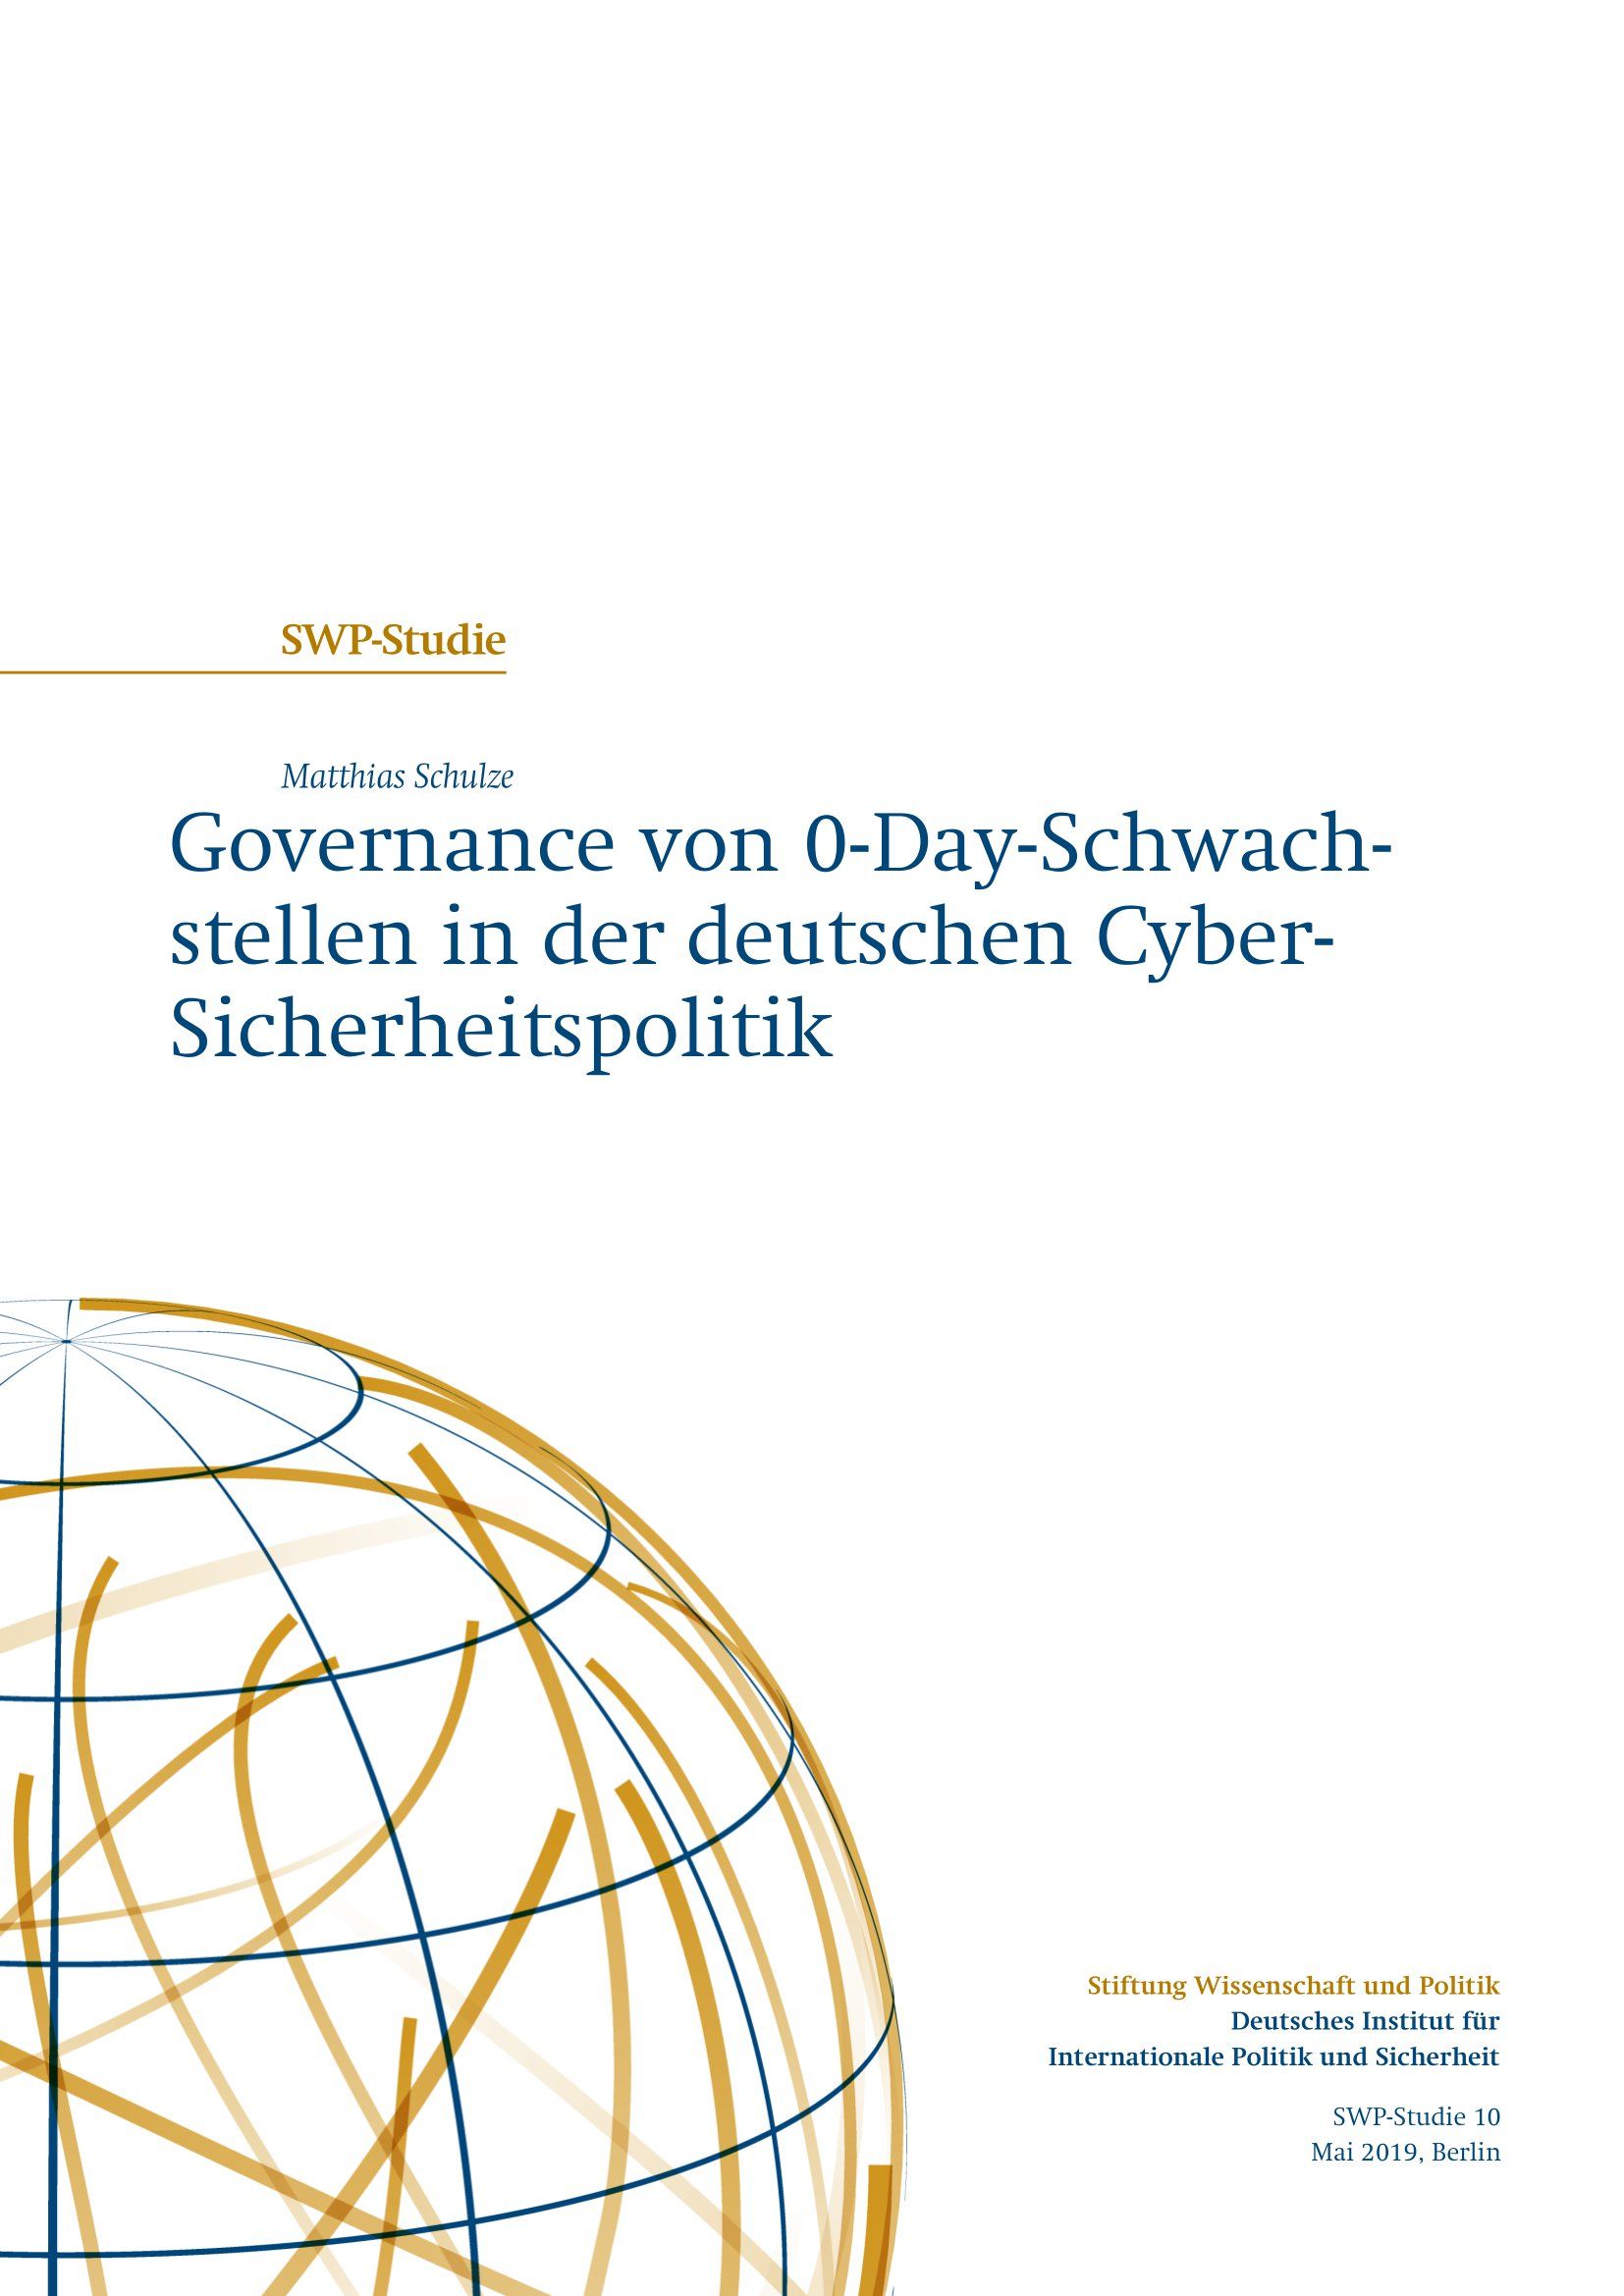 Governance von 0-Day-Schwachstellen in der deutschen Cyber-Sicherheitspolitik